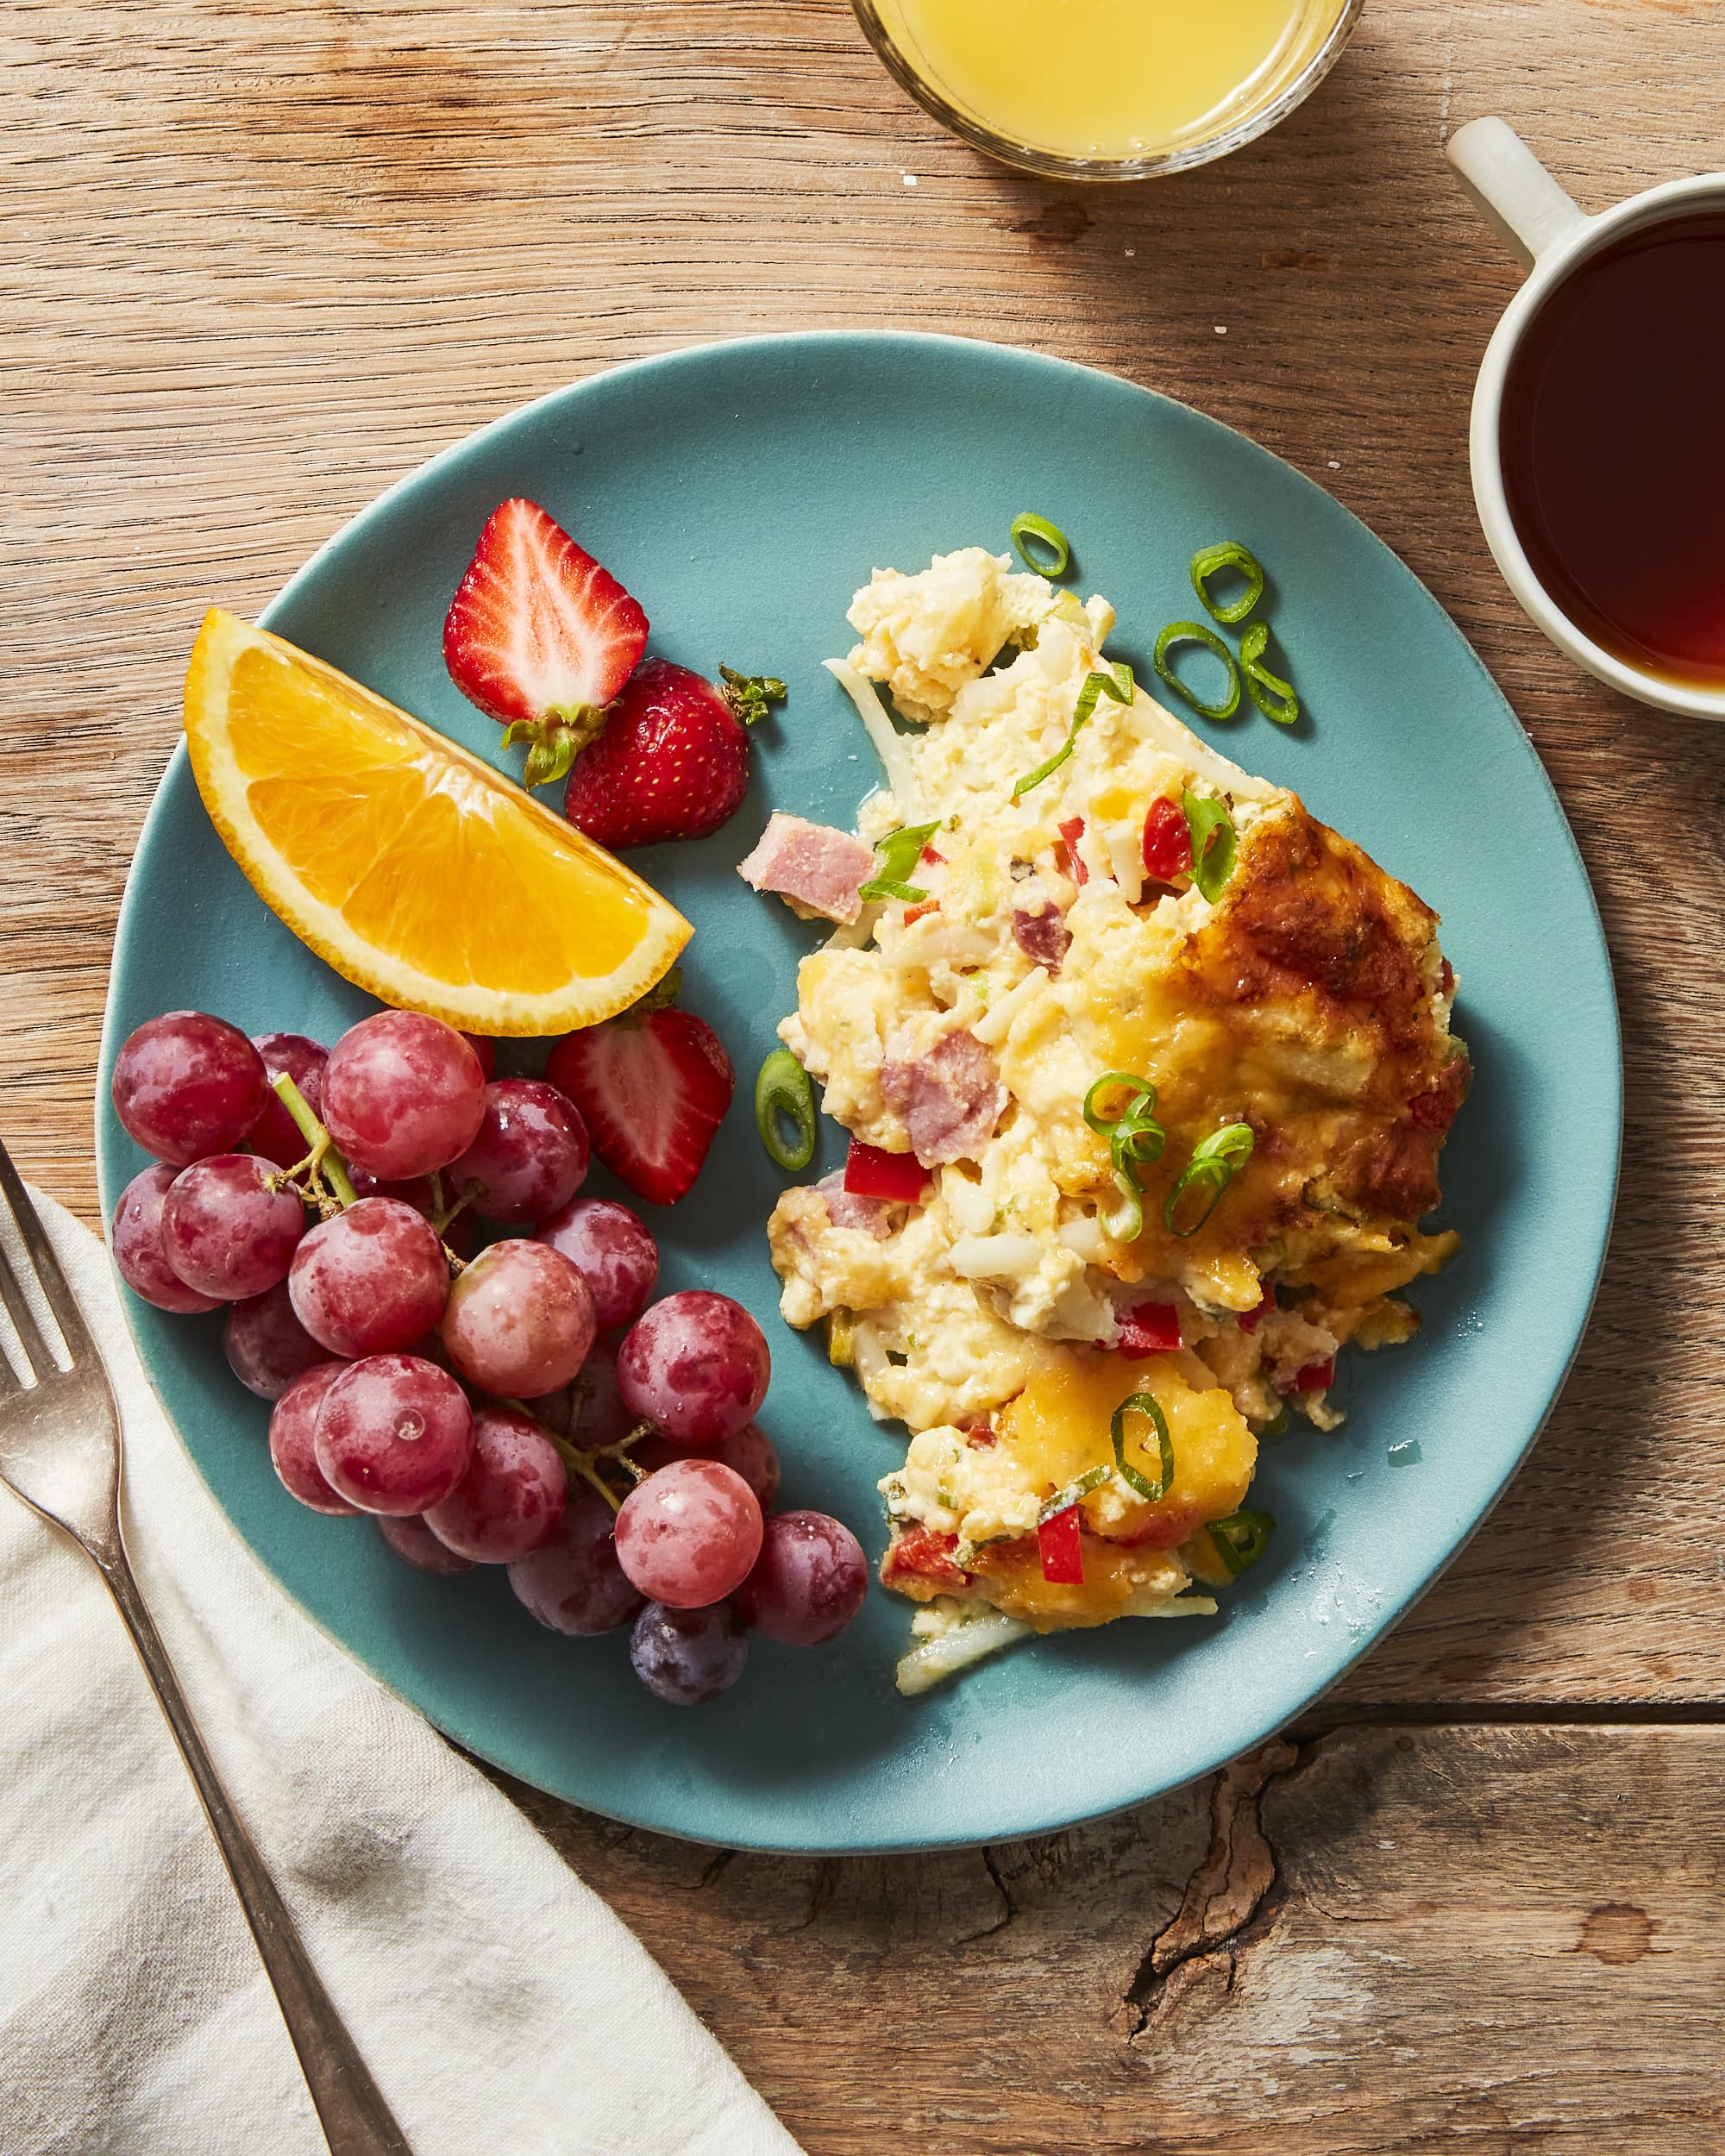 https://cdn.apartmenttherapy.info/image/upload/v1662435445/k/Photo/Recipes/2022-10-easy-breakfast-casserole/easy-breakfast-casserole-0164.jpg